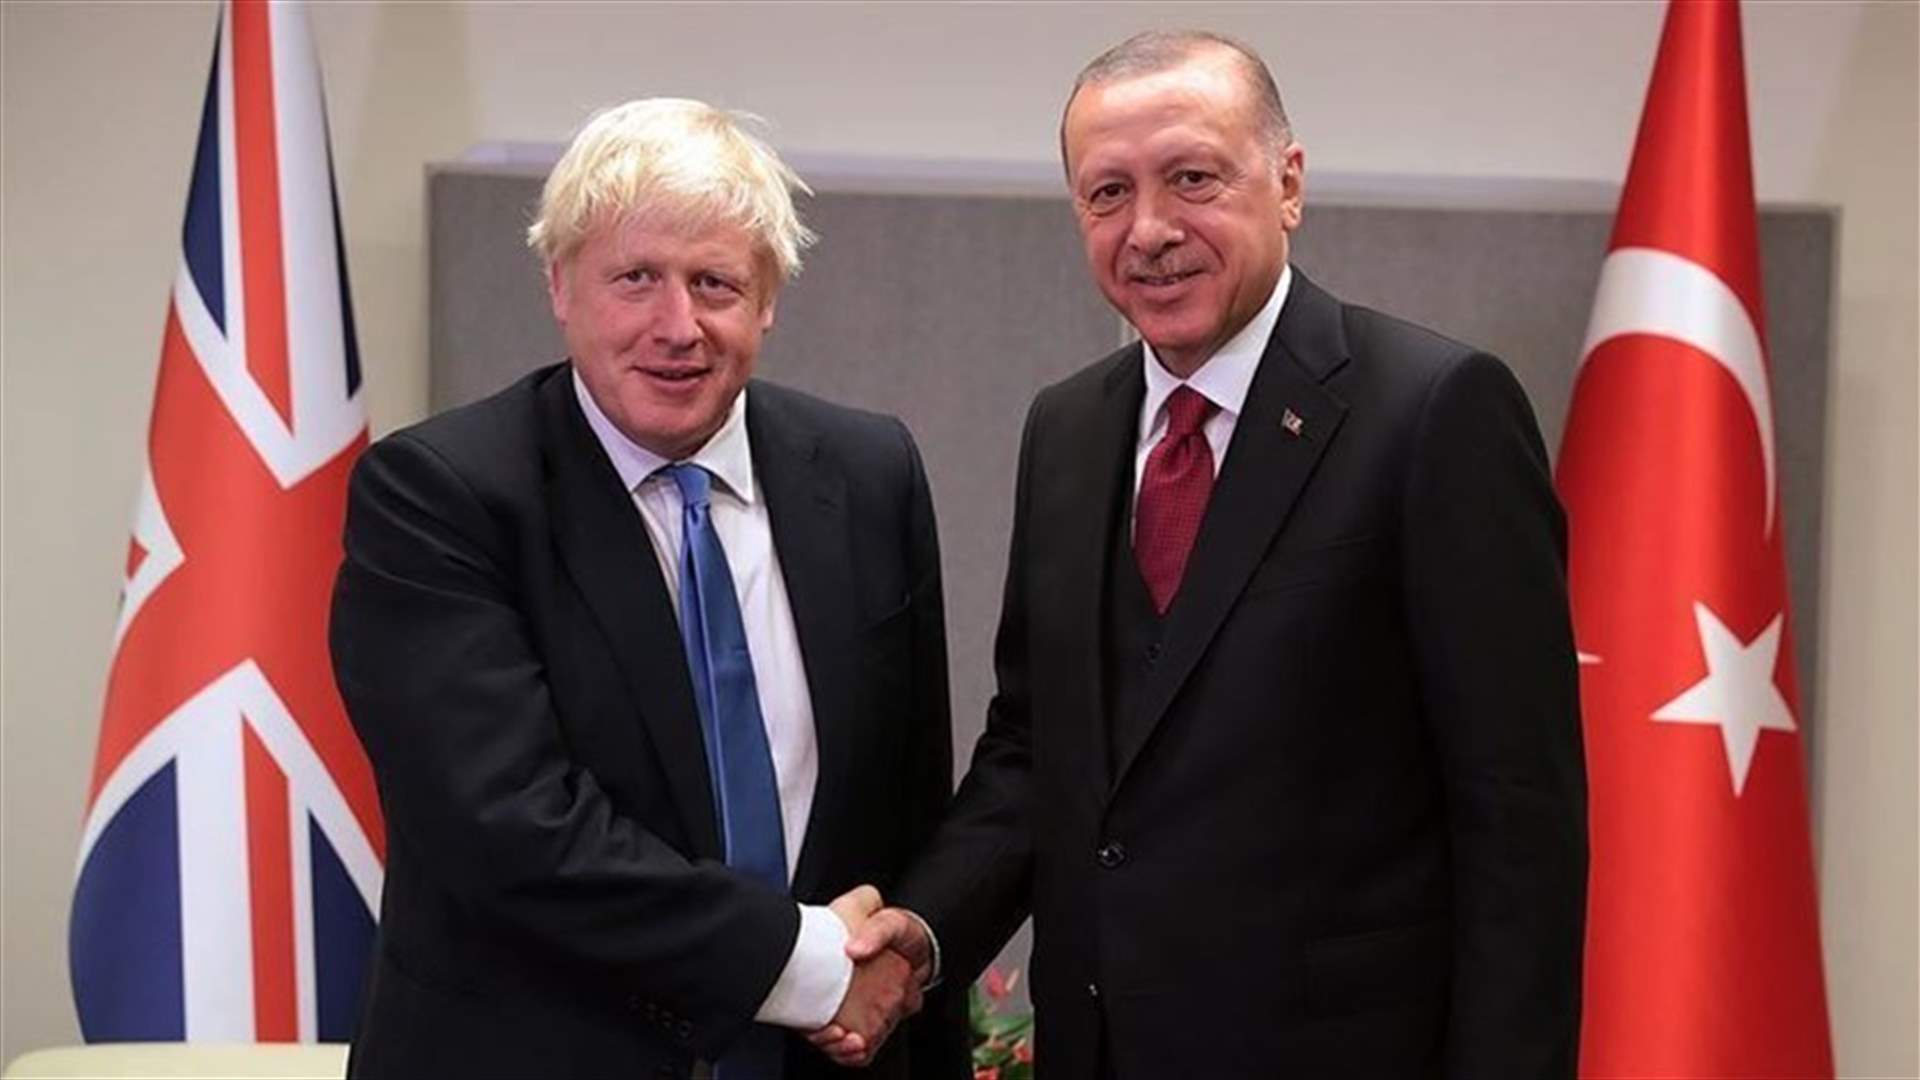 جونسون يعبر لأردوغان عن قلقه بشأن التوتر في شرق المتوسط